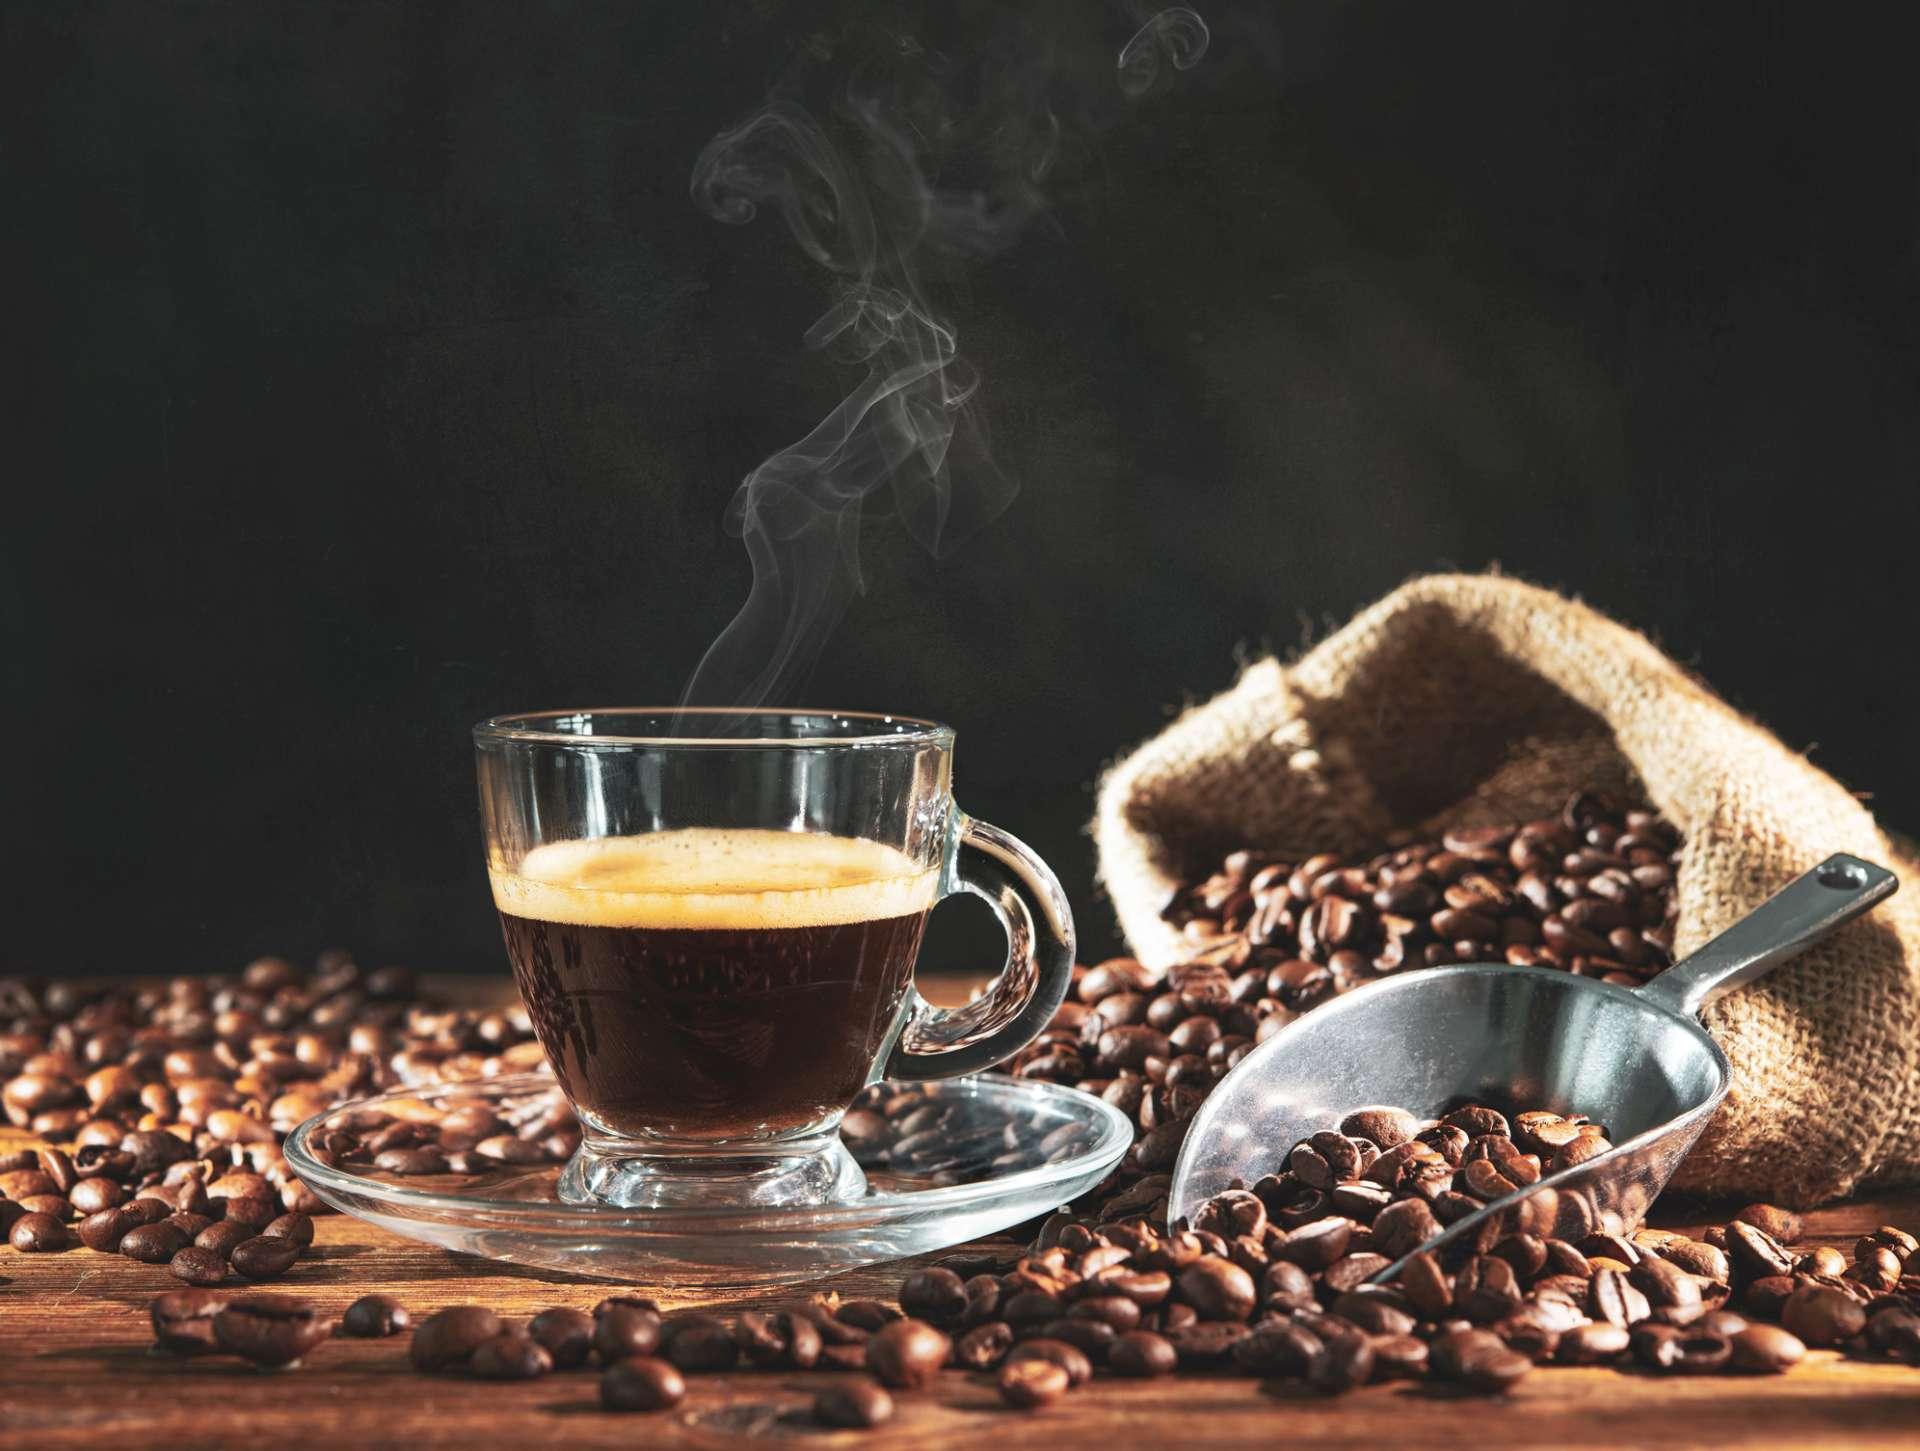 Tasse Espresso mit Kaffeebohnen, Beutel, Schaufel und Dampf auf dunklem hölzernem Hintergrund